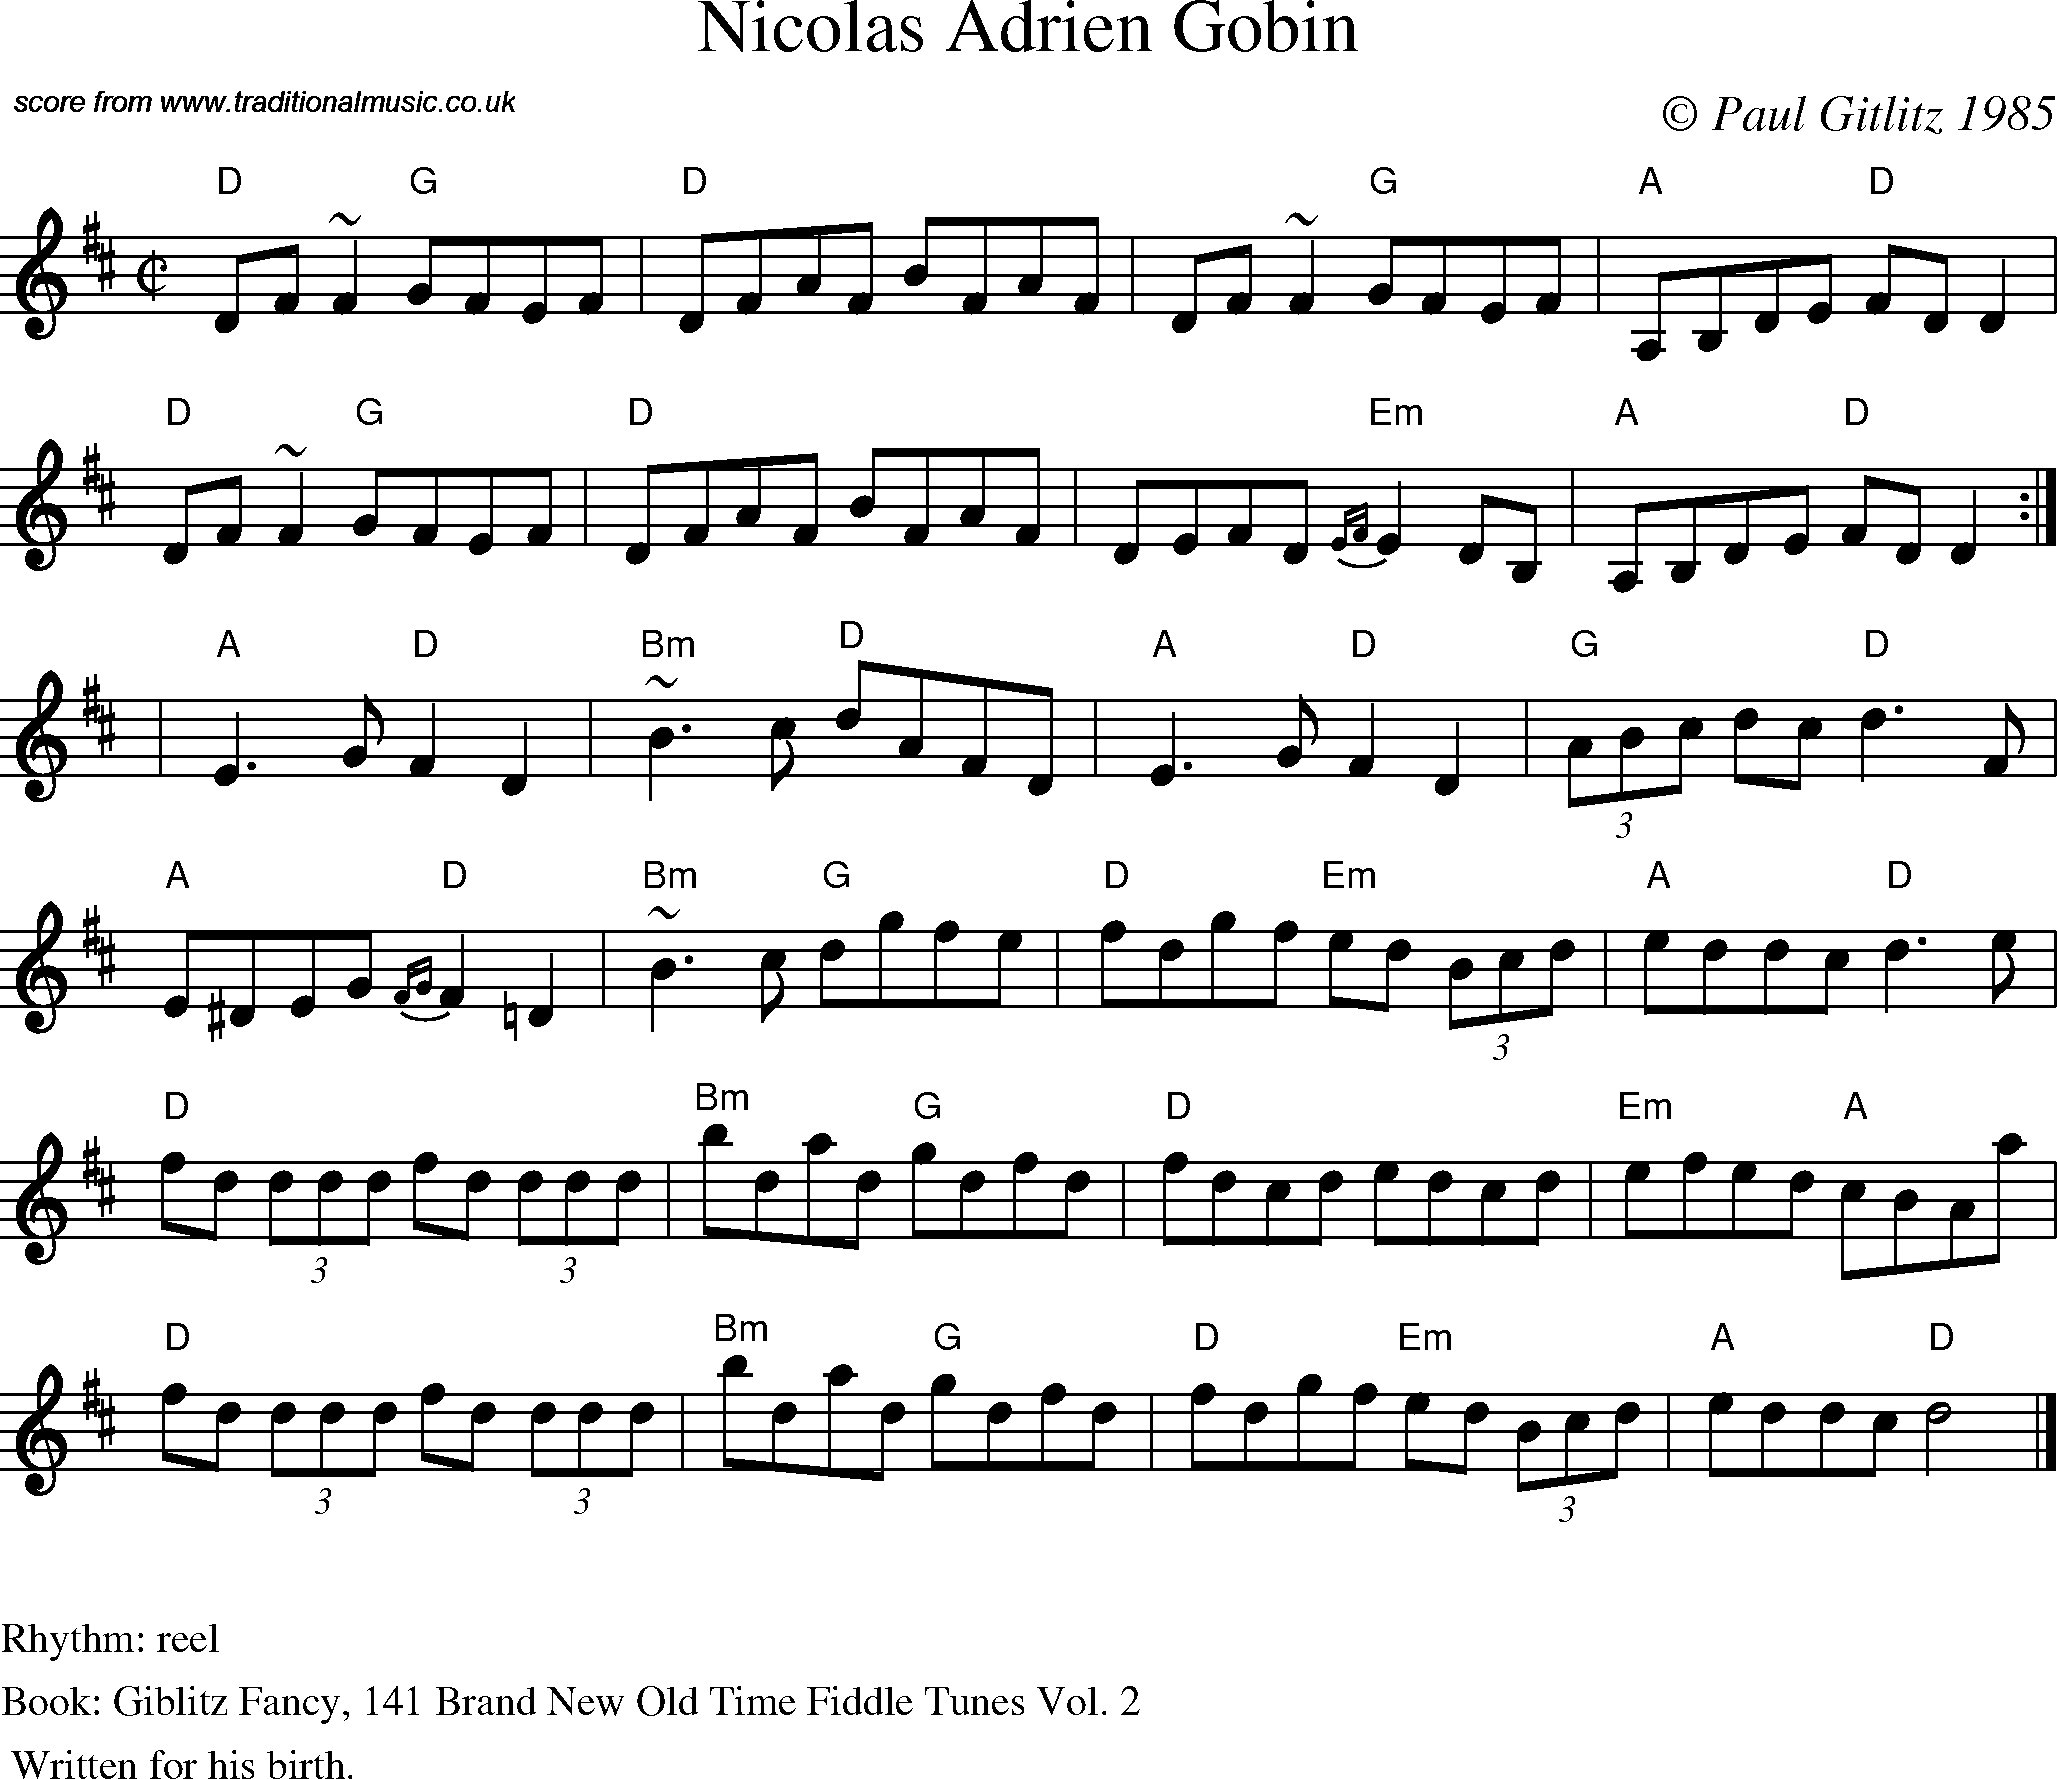 Sheet Music Score for Reel - Nicolas Adrien Gobin